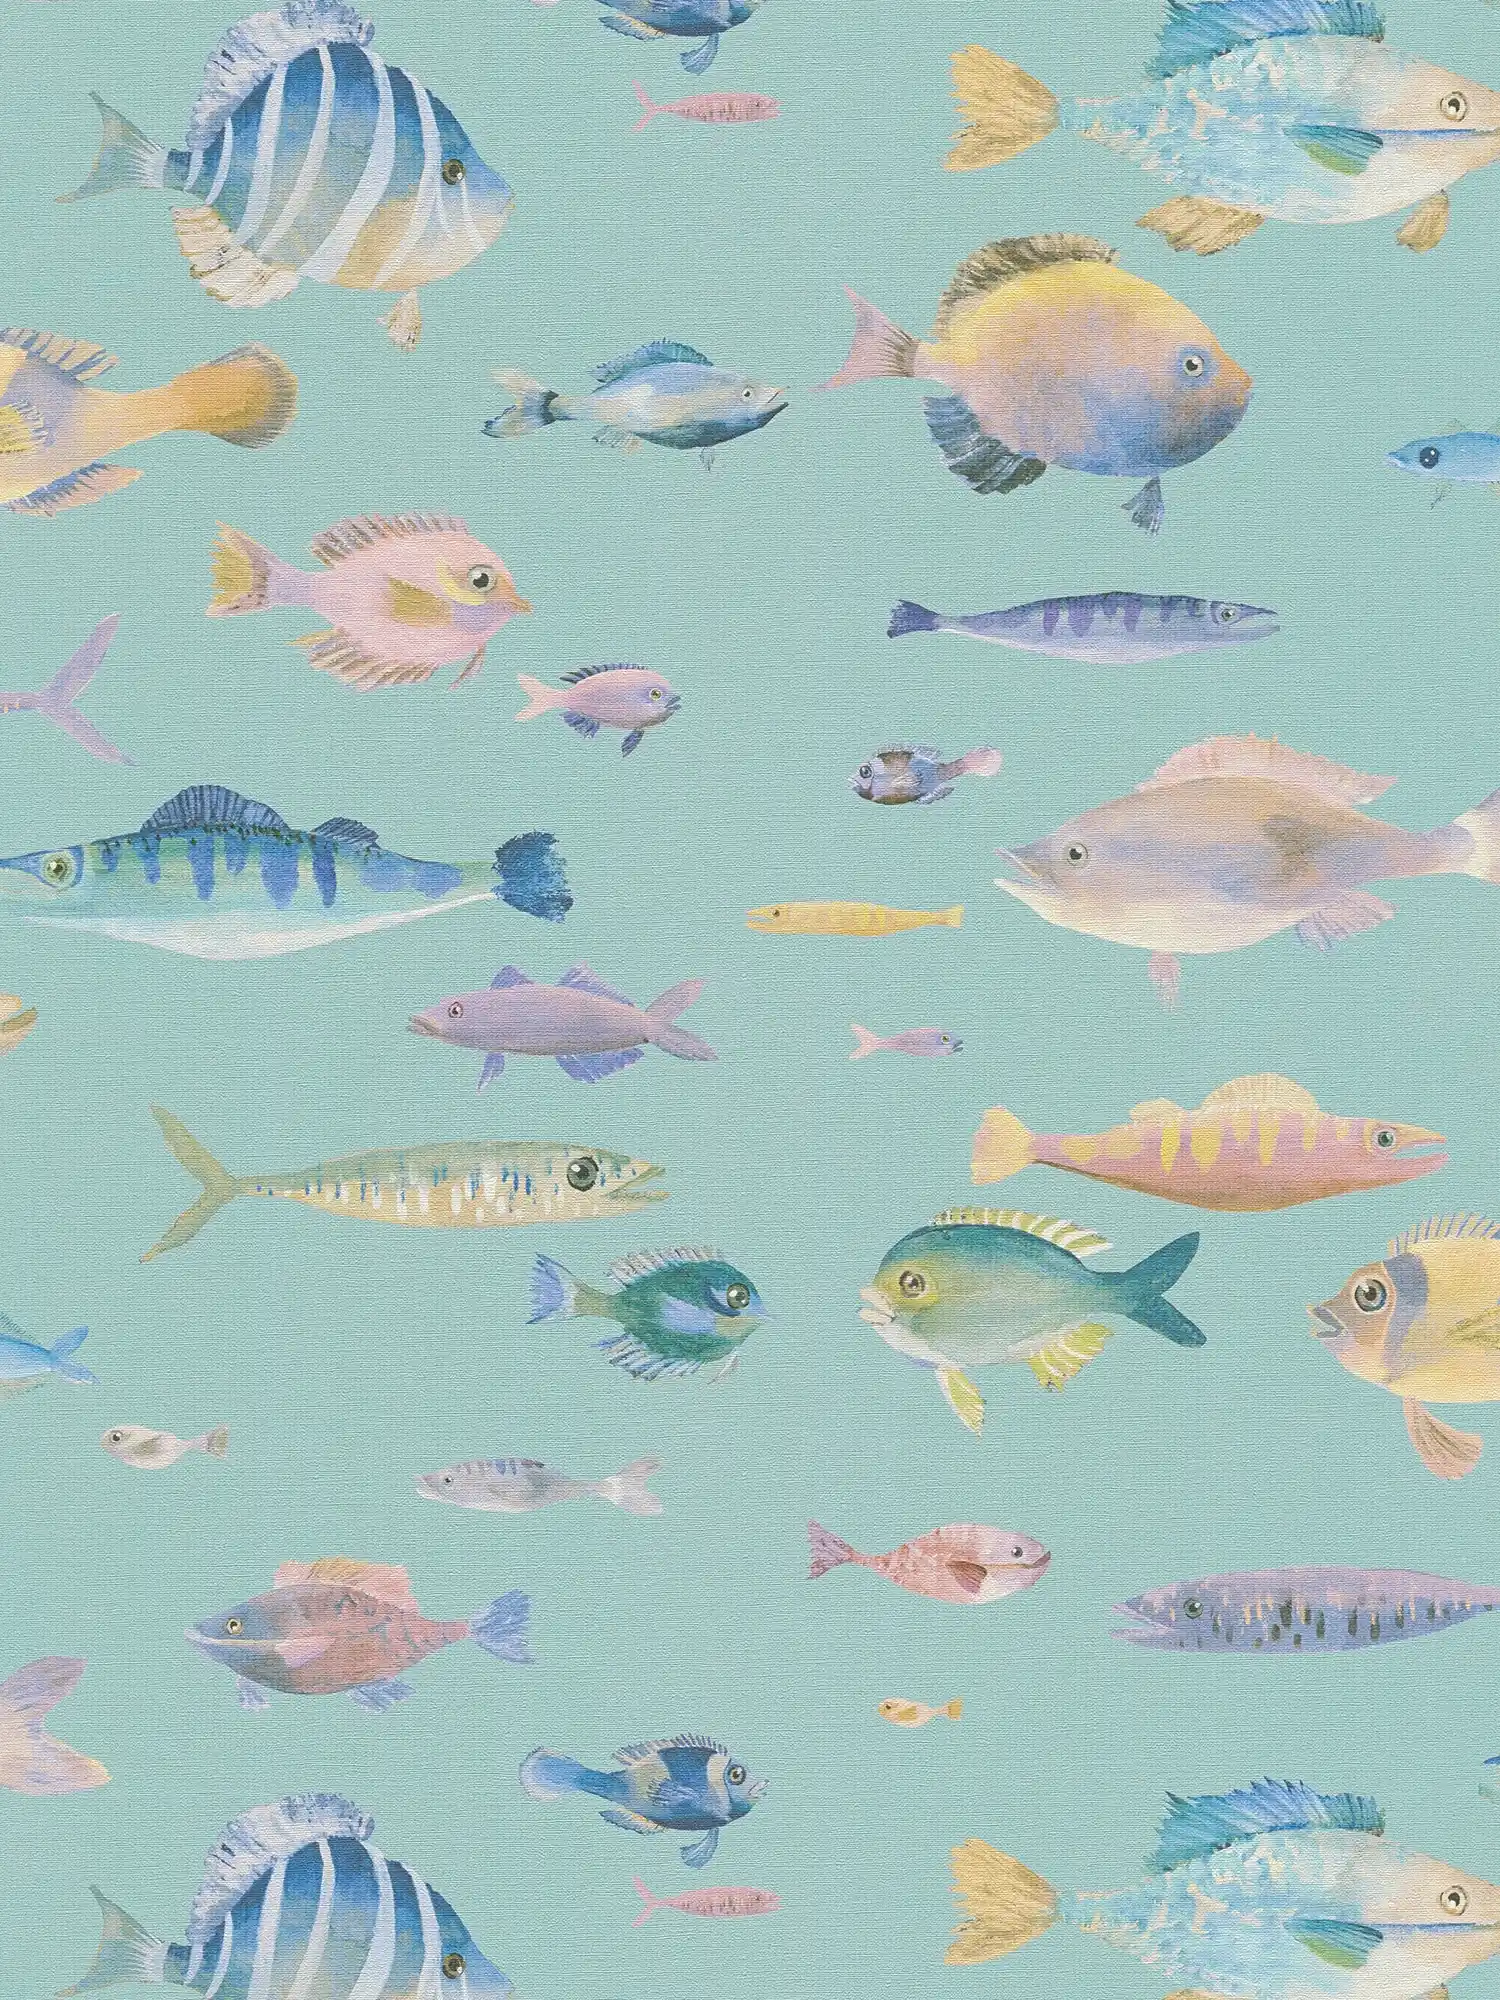 Vliestapete Unterwasserwelt mit Fischen – Blau, Bunt, Violett
